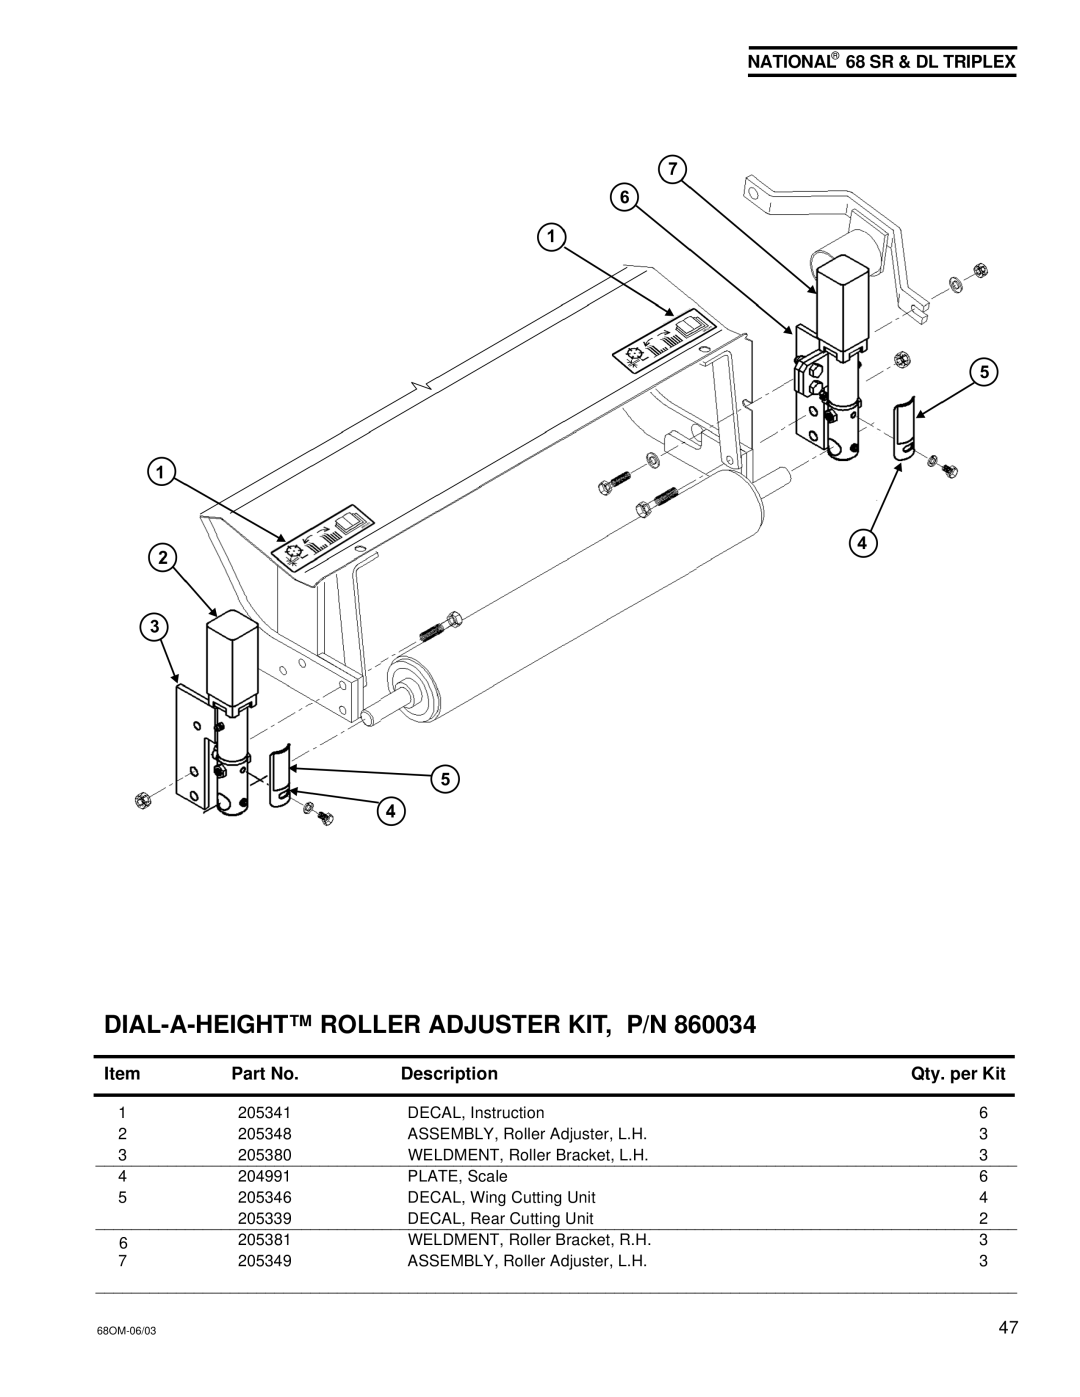 National Mower 68 DL, 68 SR owner manual DIAL-A-HEIGHT Roller Adjuster KIT, P/N 